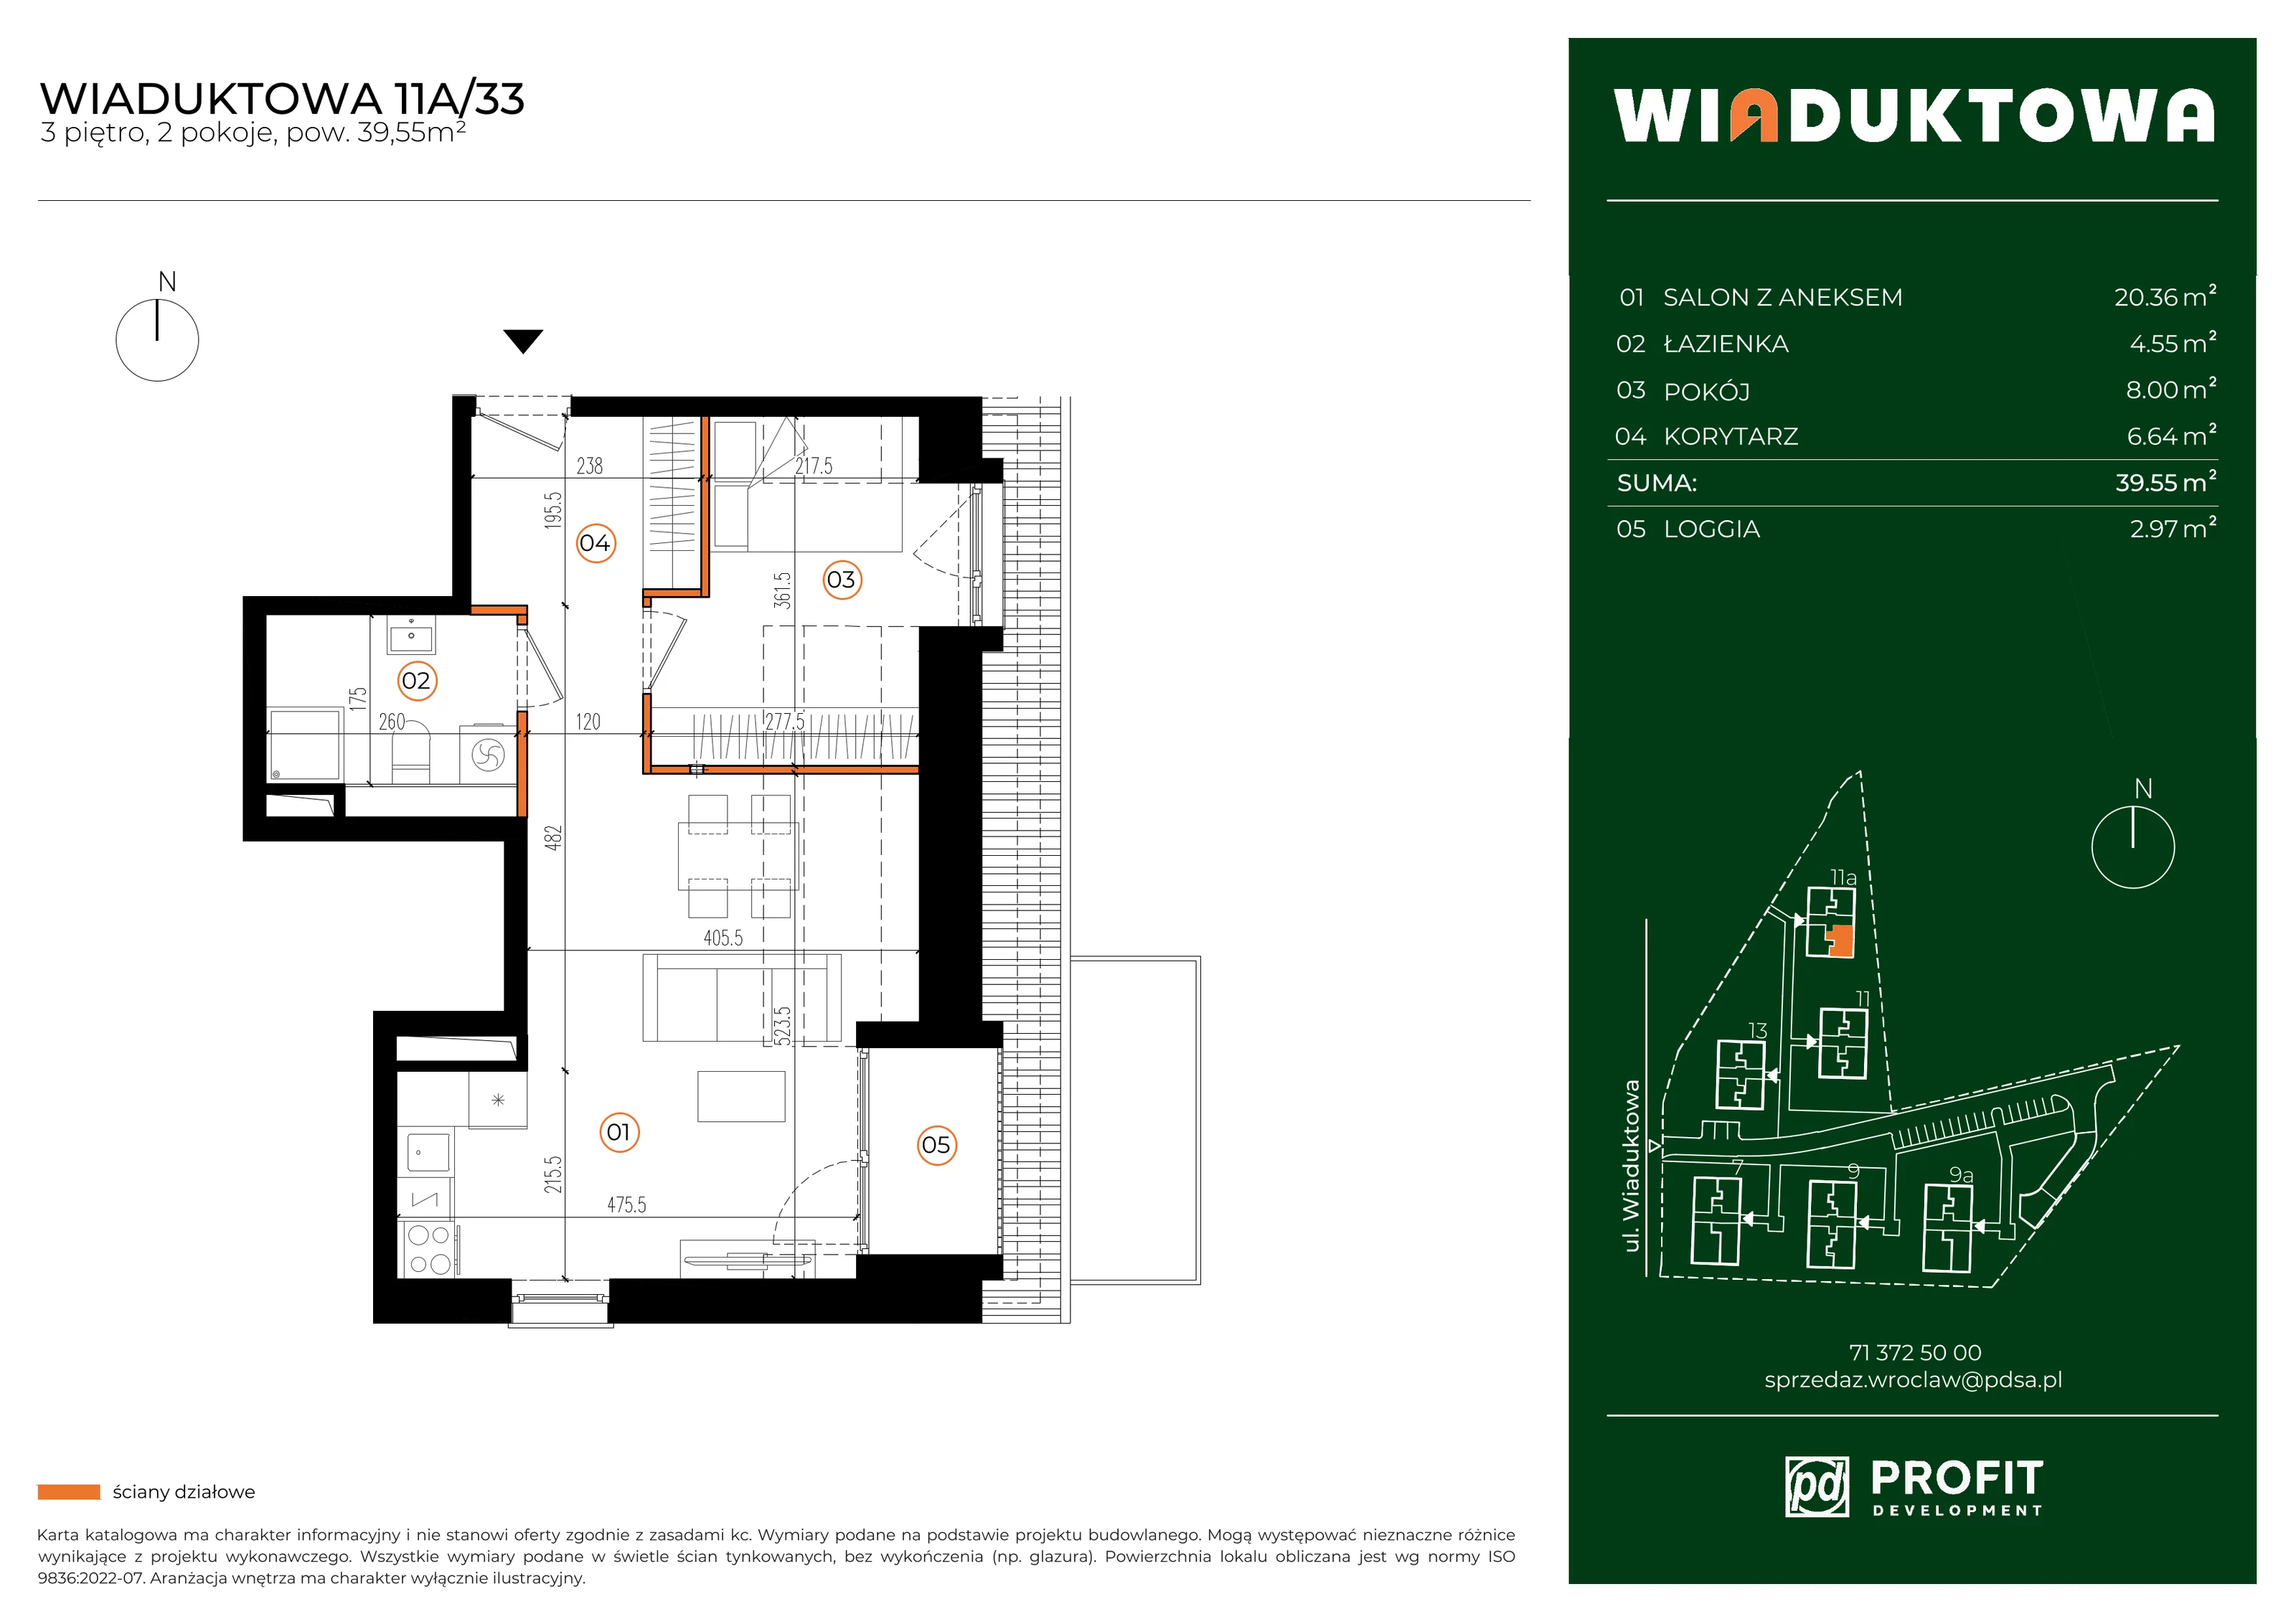 Mieszkanie 39,55 m², piętro 3, oferta nr WI/11A/33, Wiaduktowa, Wrocław, Krzyki-Partynice, Krzyki, ul. Wiaduktowa